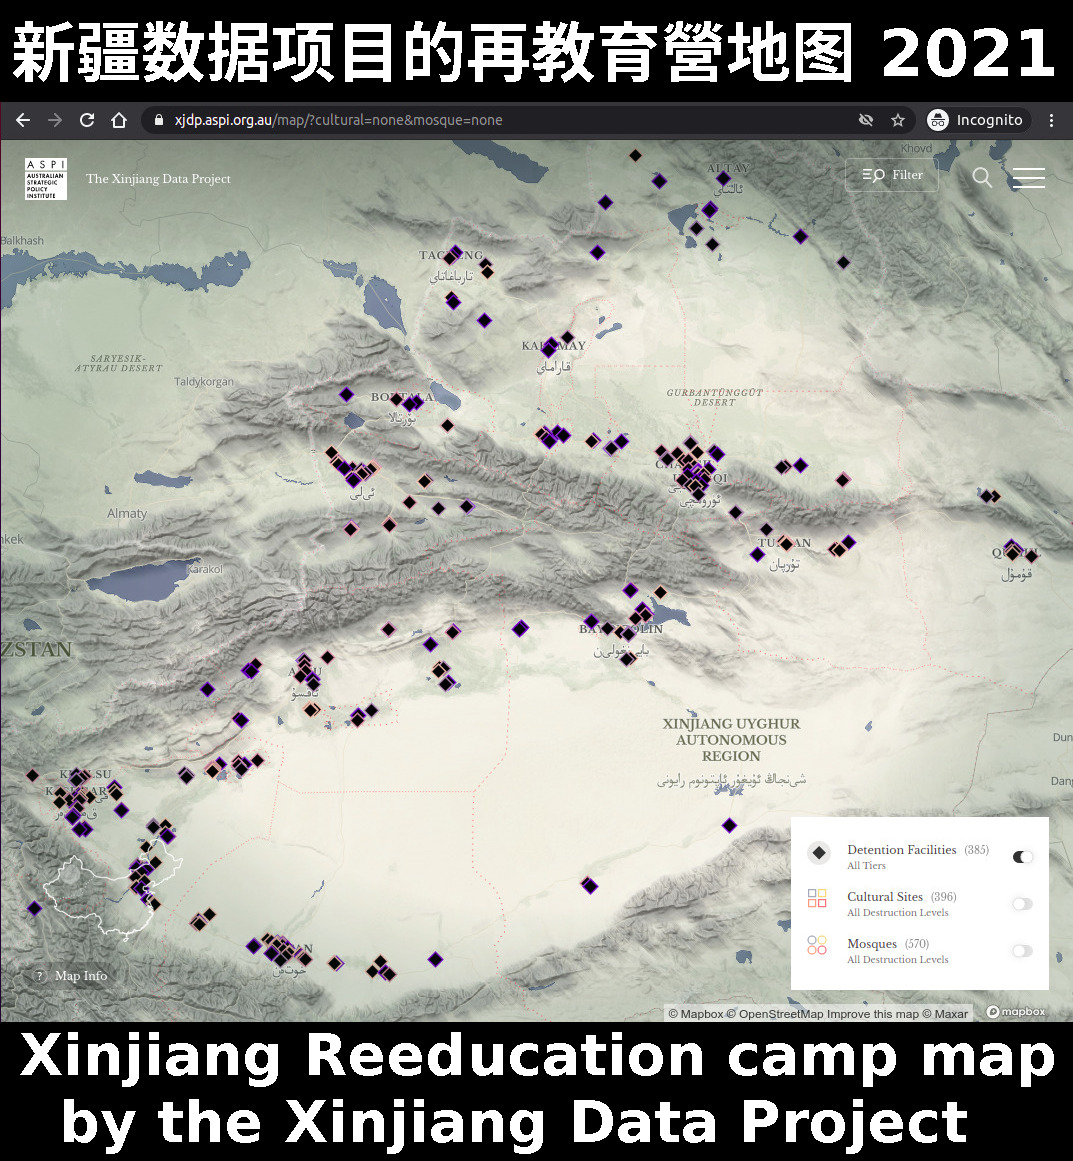 Xinjiang Data Project screenshot of camp map 2021